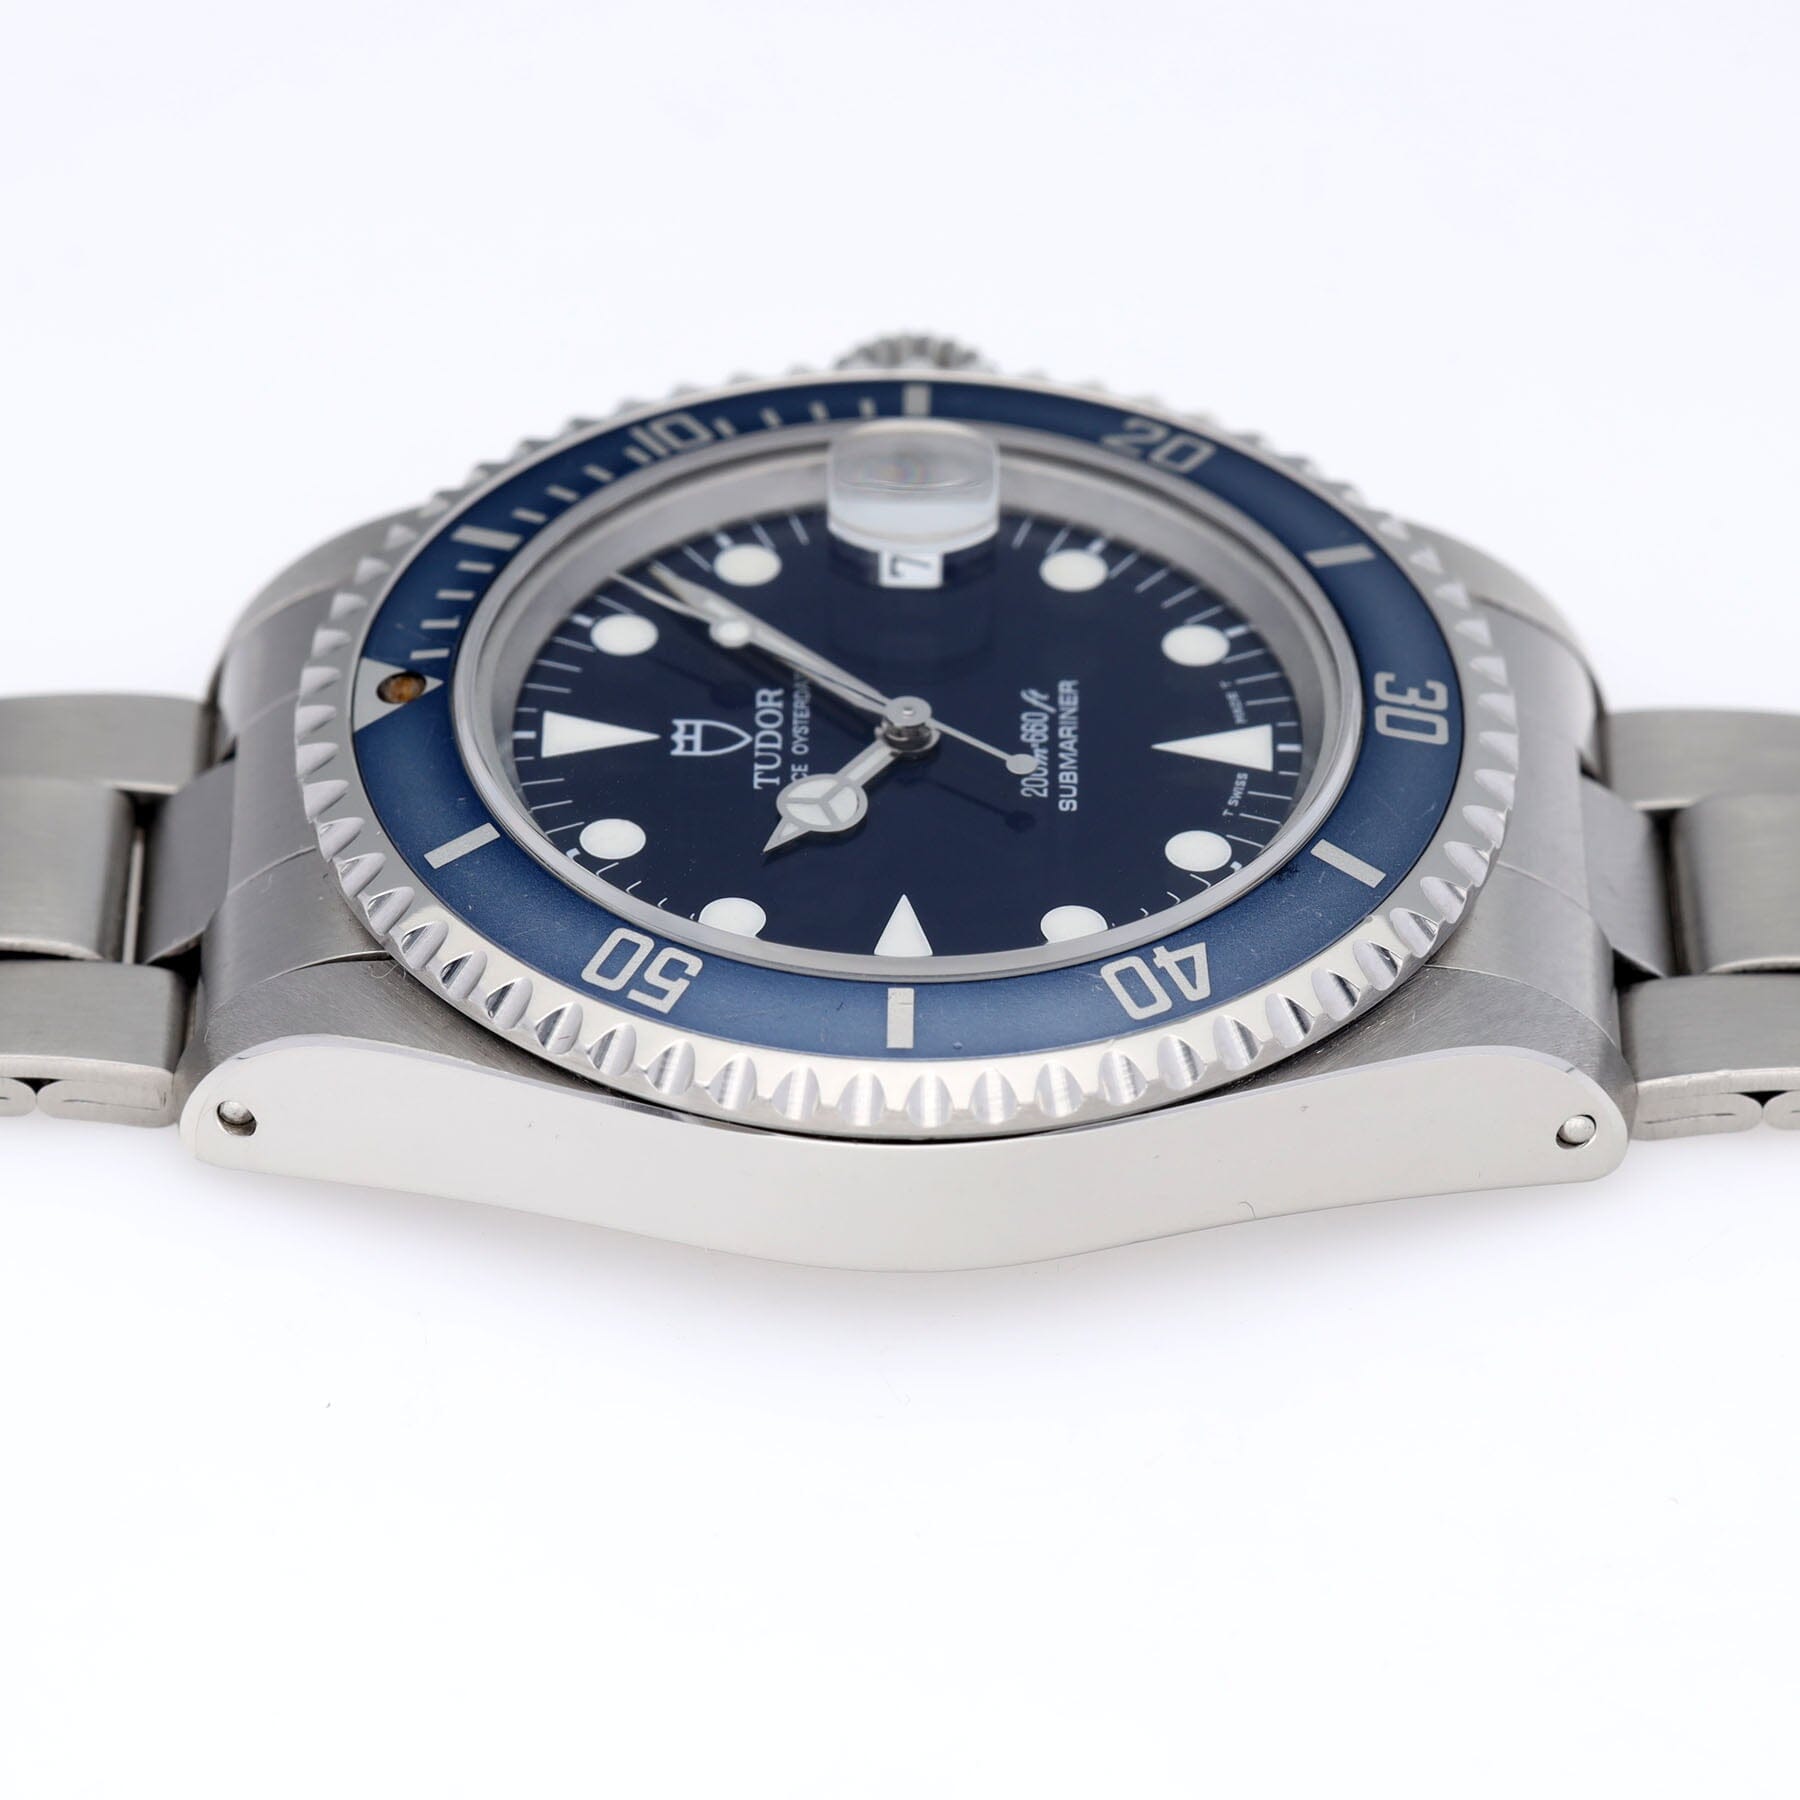 Tudor Submariner Date Blue dial ref 79190